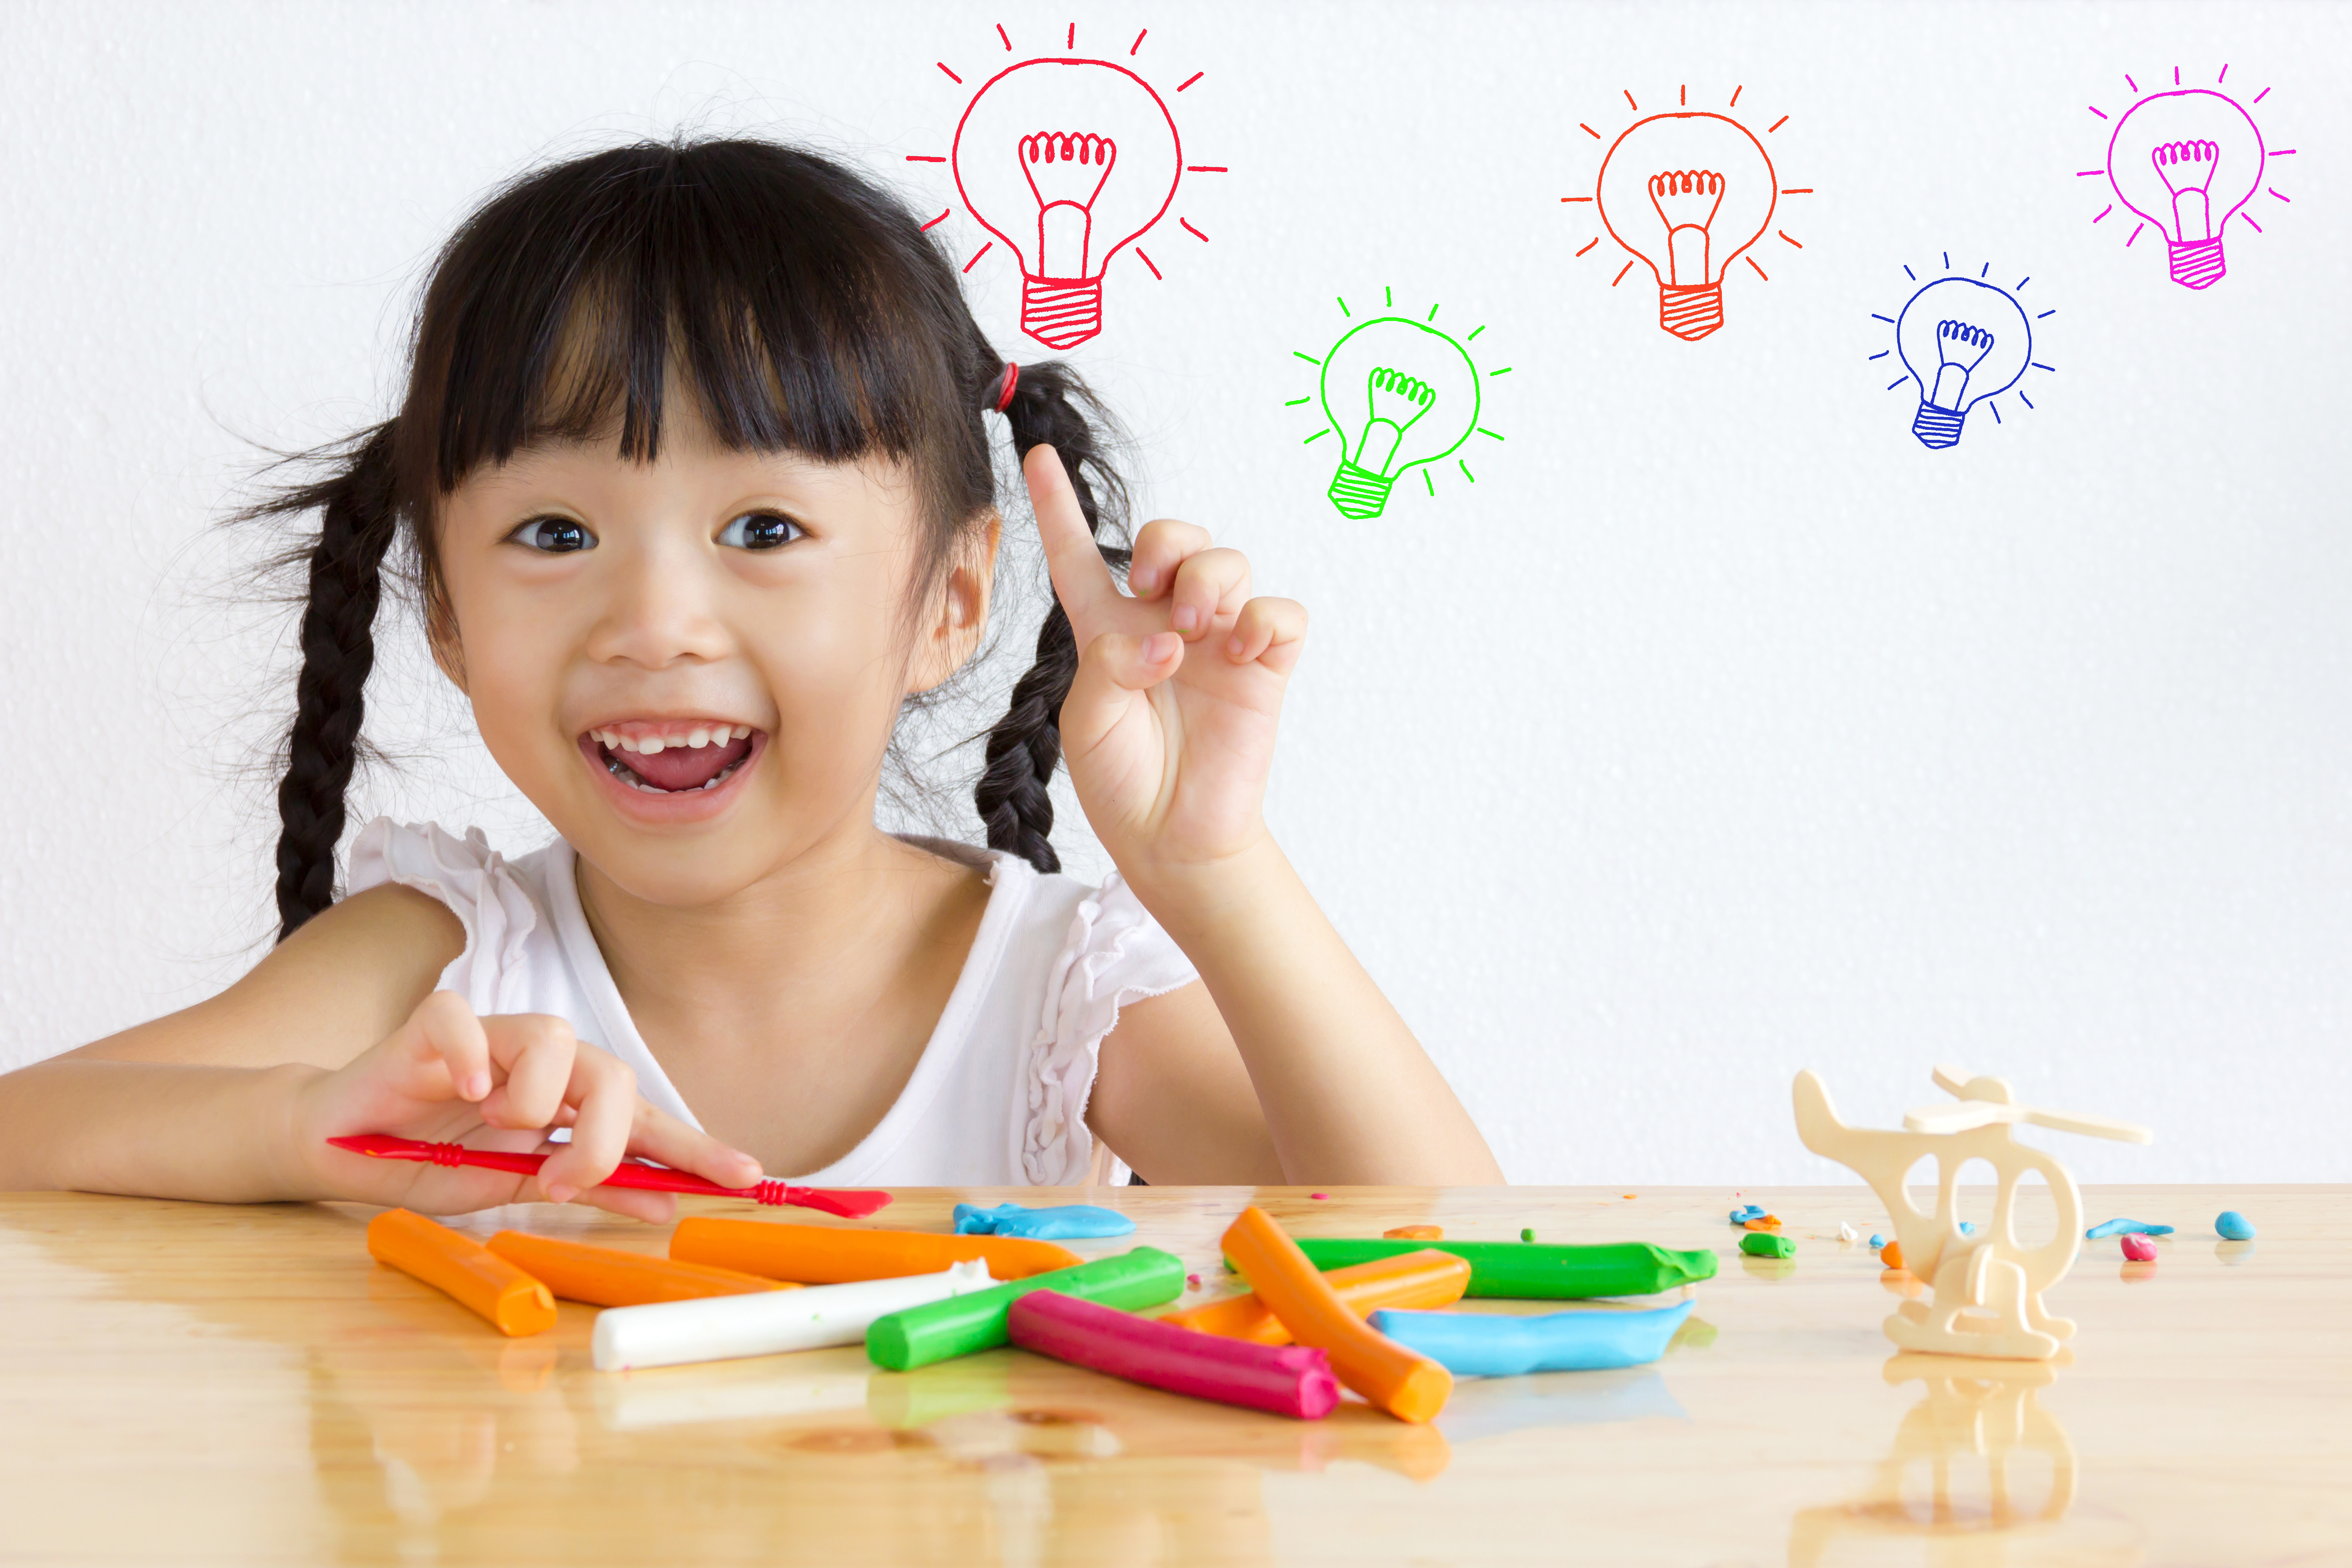 Mas afinal, quais são as vantagens que a criatividade traz para as crianças? O estímulo dessa habilidade pode auxiliar na vida adulta dos pequenos?